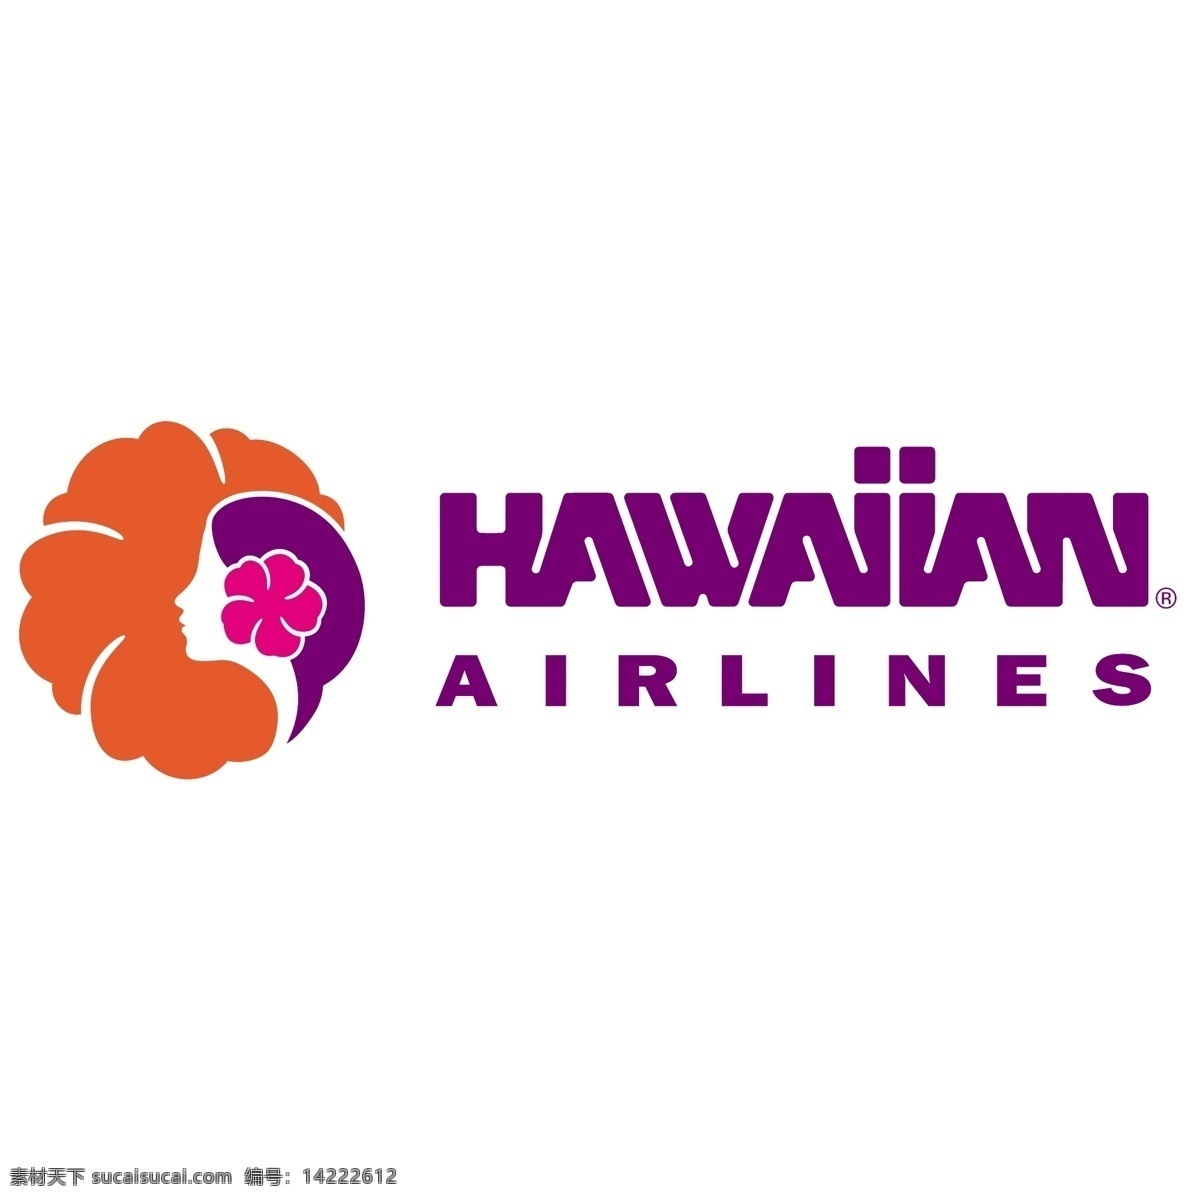 夏威夷 航空公司 标识 公司 免费 品牌 品牌标识 商标 矢量标志下载 免费矢量标识 矢量 psd源文件 logo设计